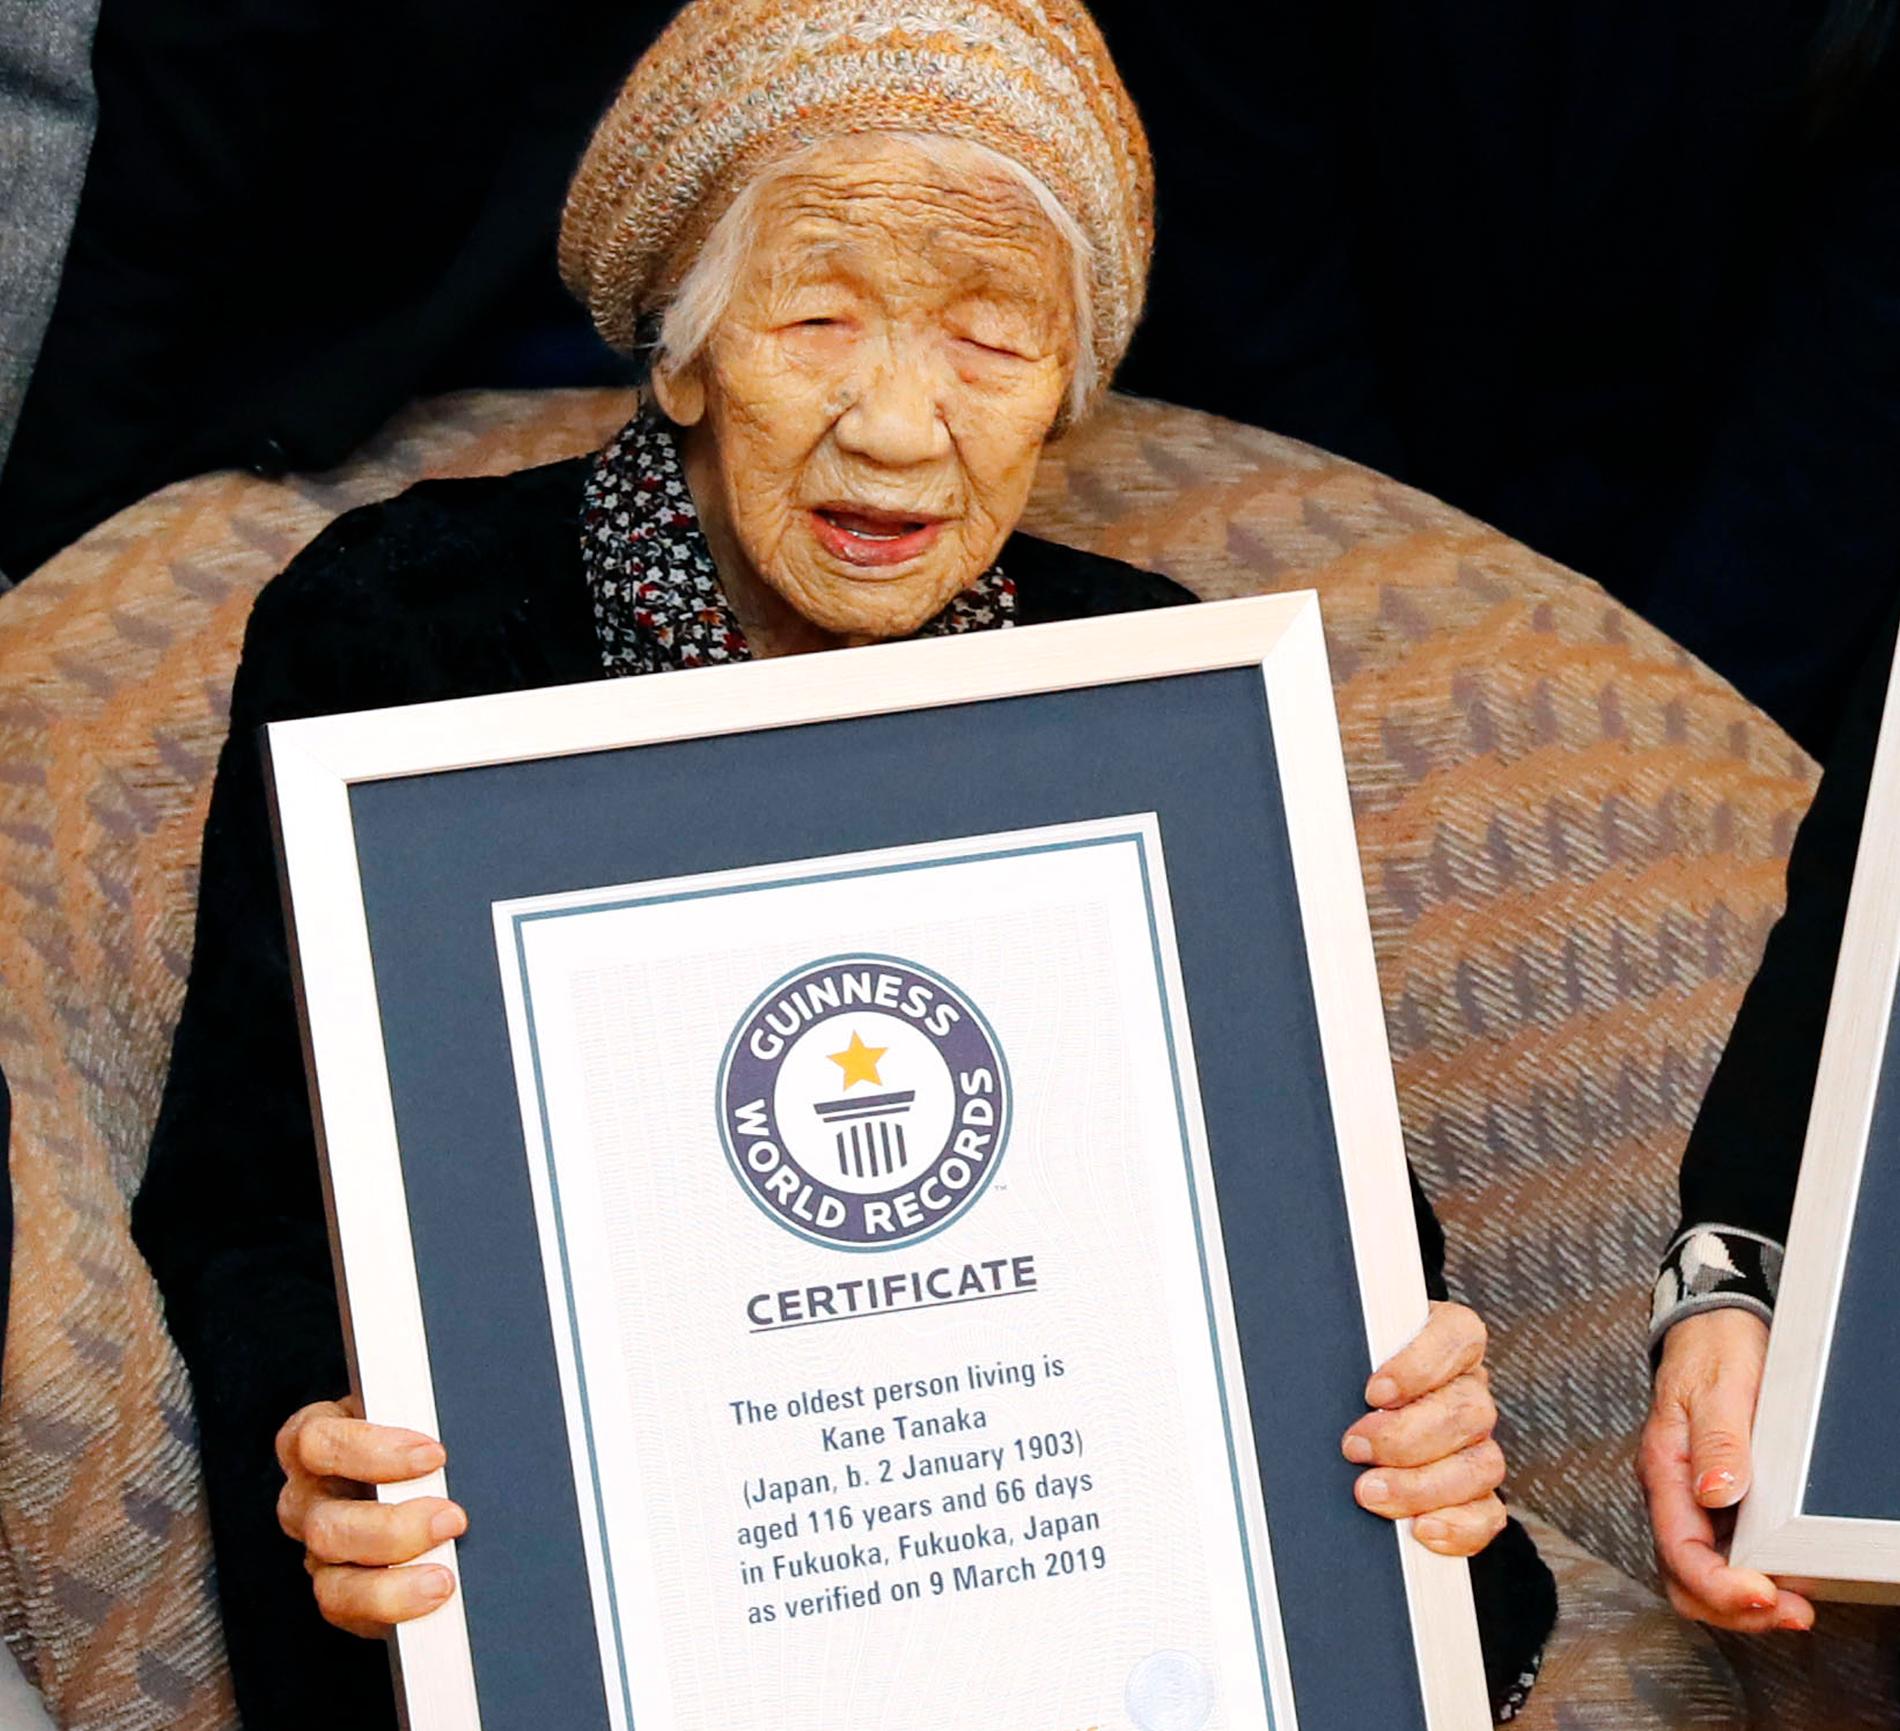 Kane Tanaka är enligt Guinness rekordbok den äldsta nu levande människan på jorden